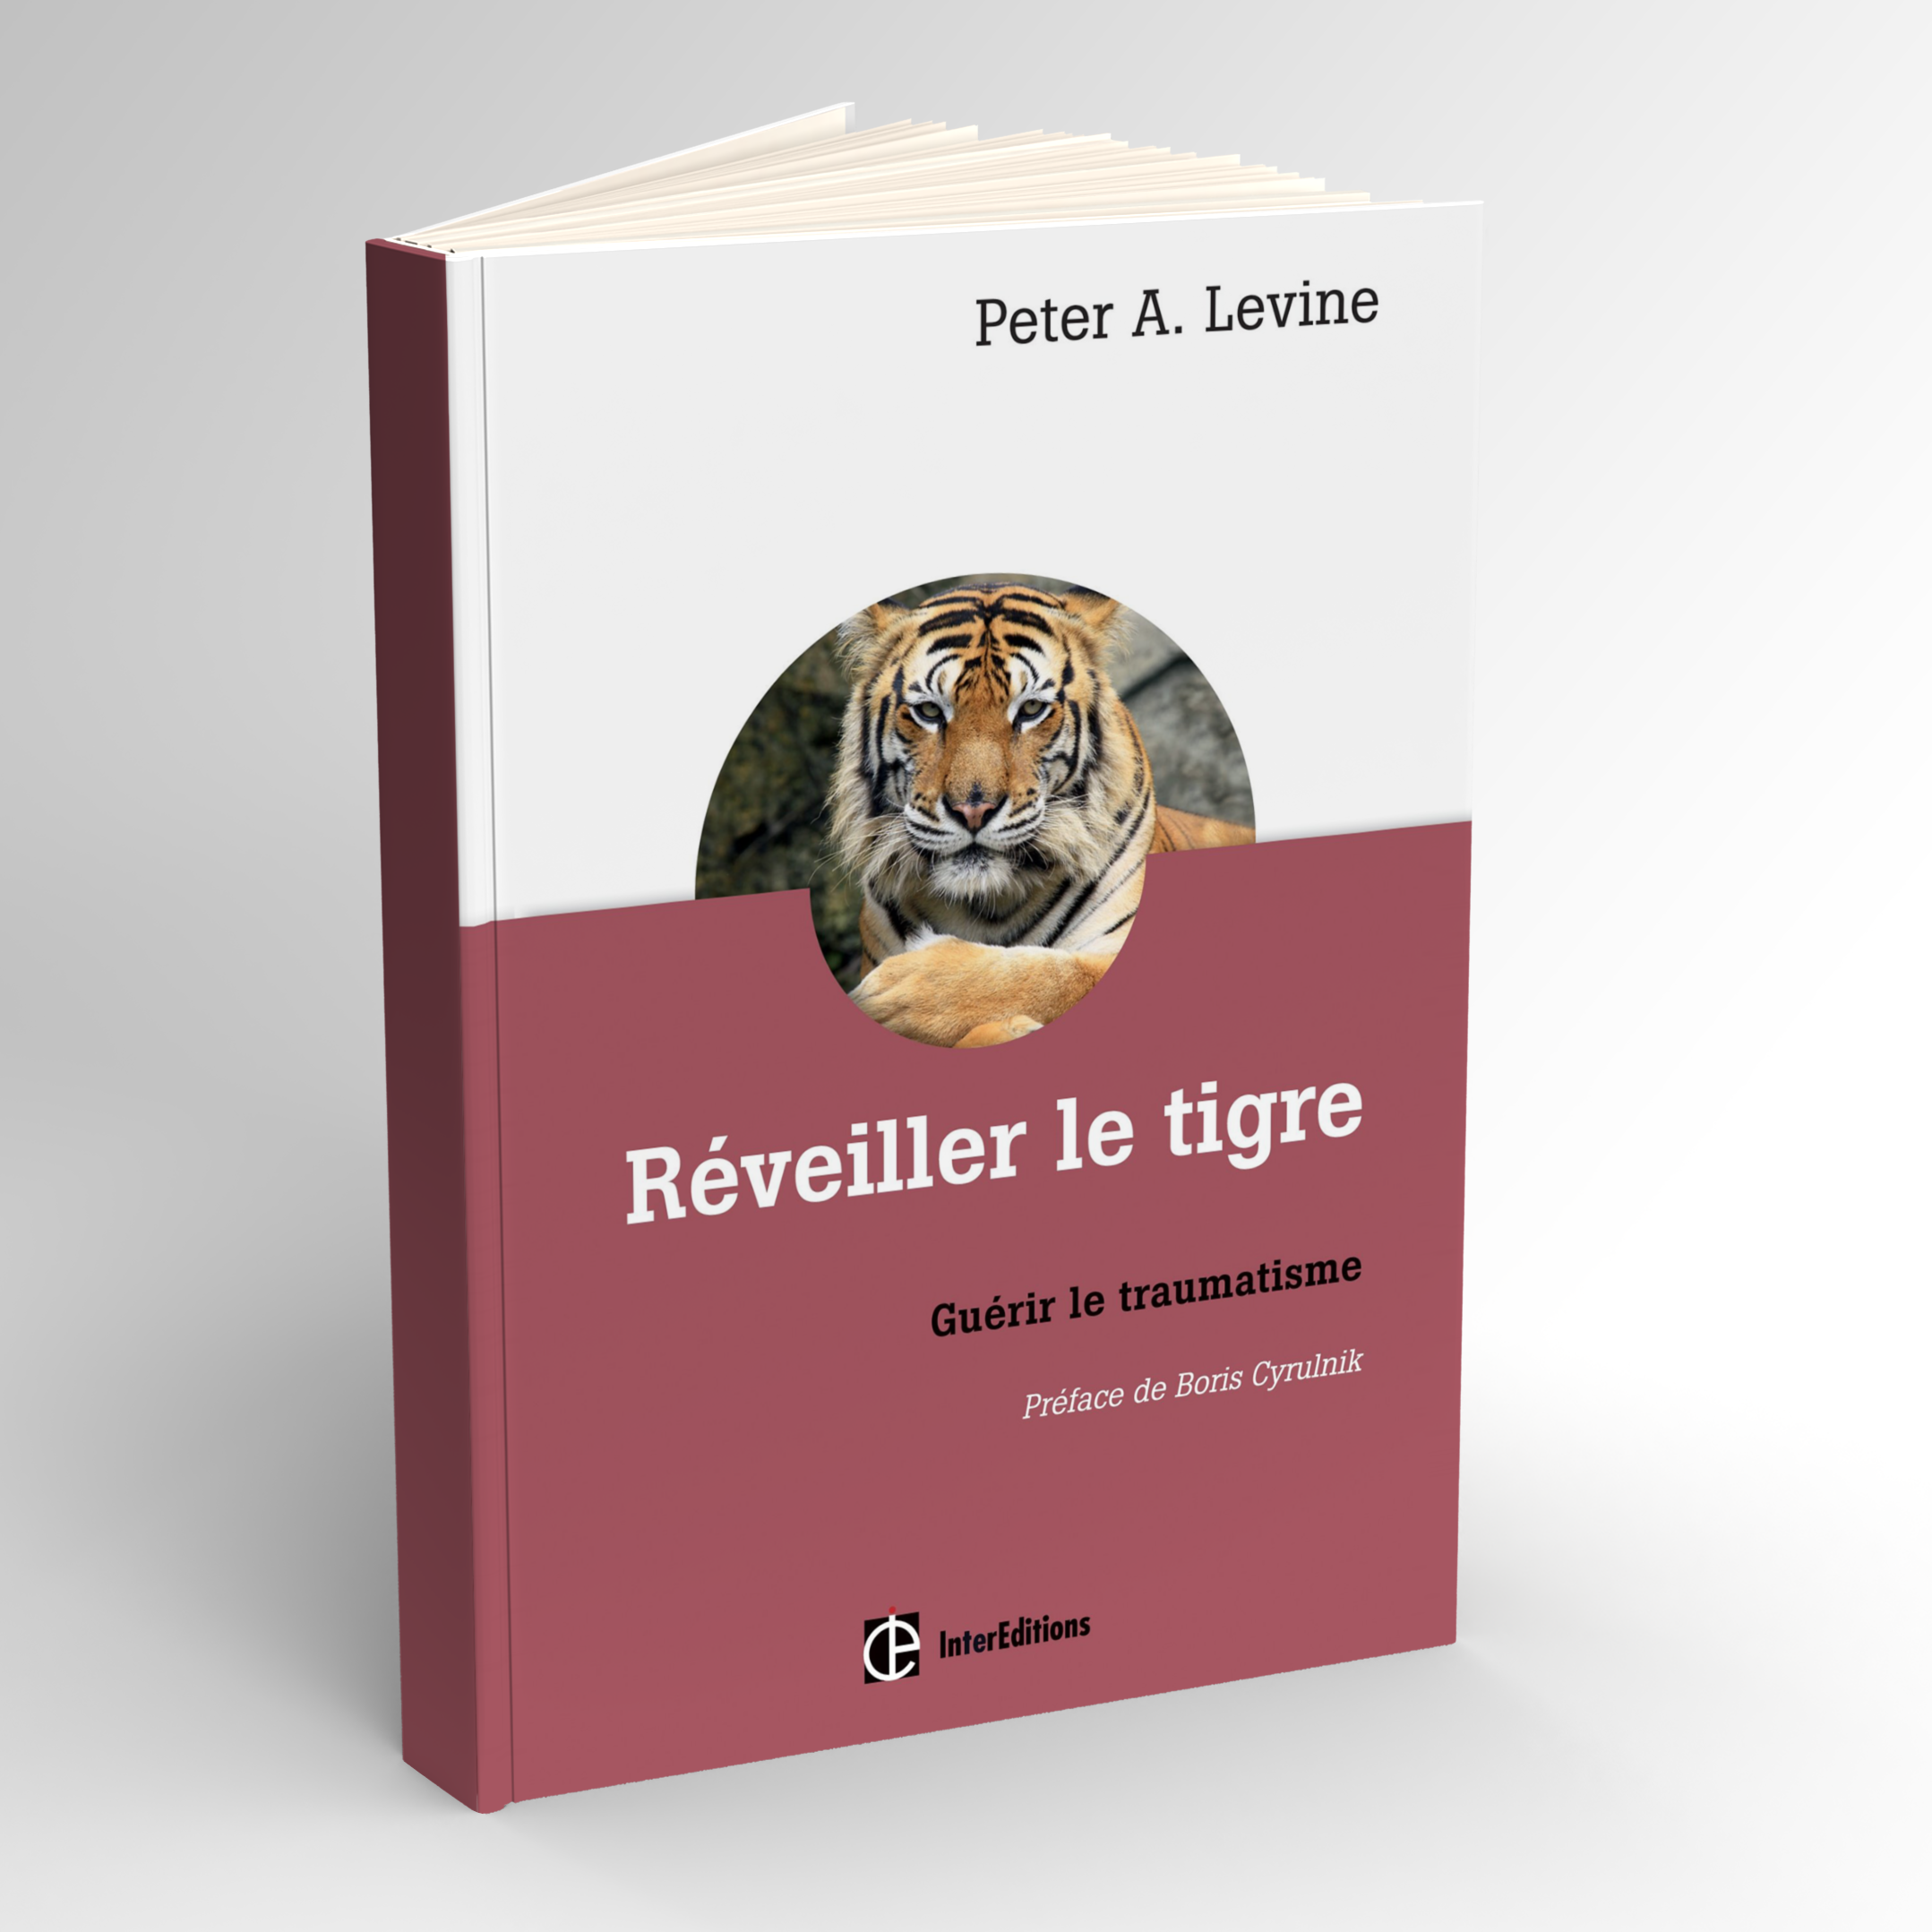 Livre Réveiller le tigre, Peter Levine. Judith Capelus, cabinet thérapeute abus sexuels, violences, Rouffach Mulhouse Colmar Haut-Rhin